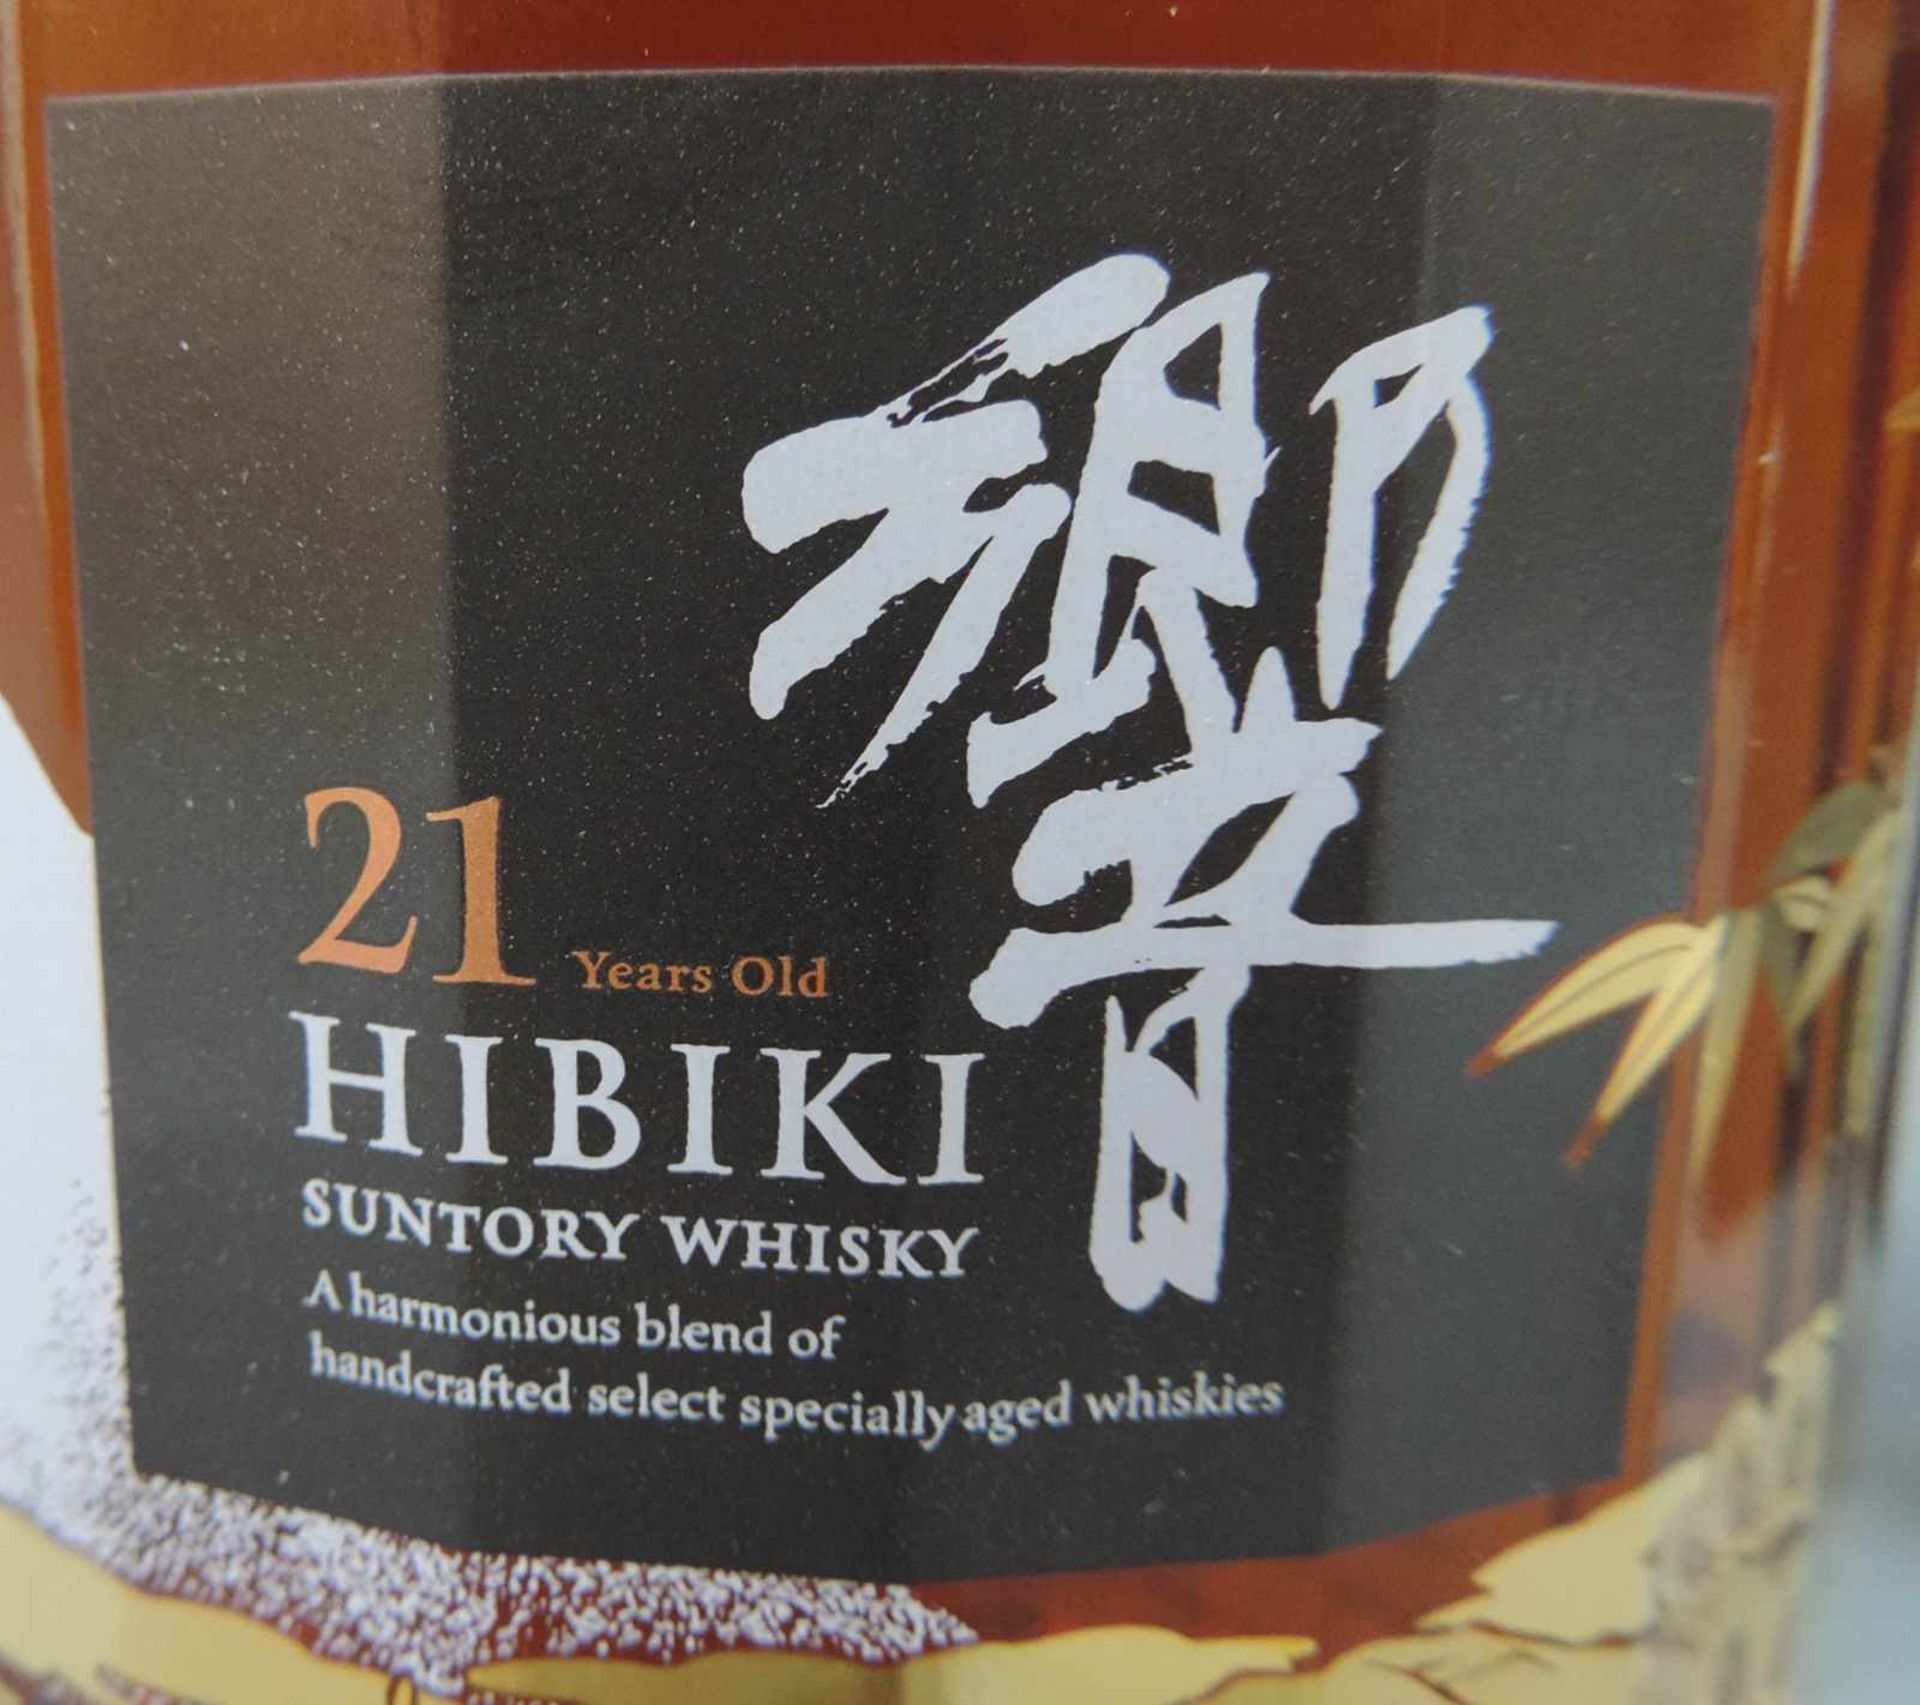 Hibiki Sutory Whiskey 21 years old. Kacho Fugetsu. Original Box. Eine ganze Flasche 700ml. Produkt - Image 3 of 4